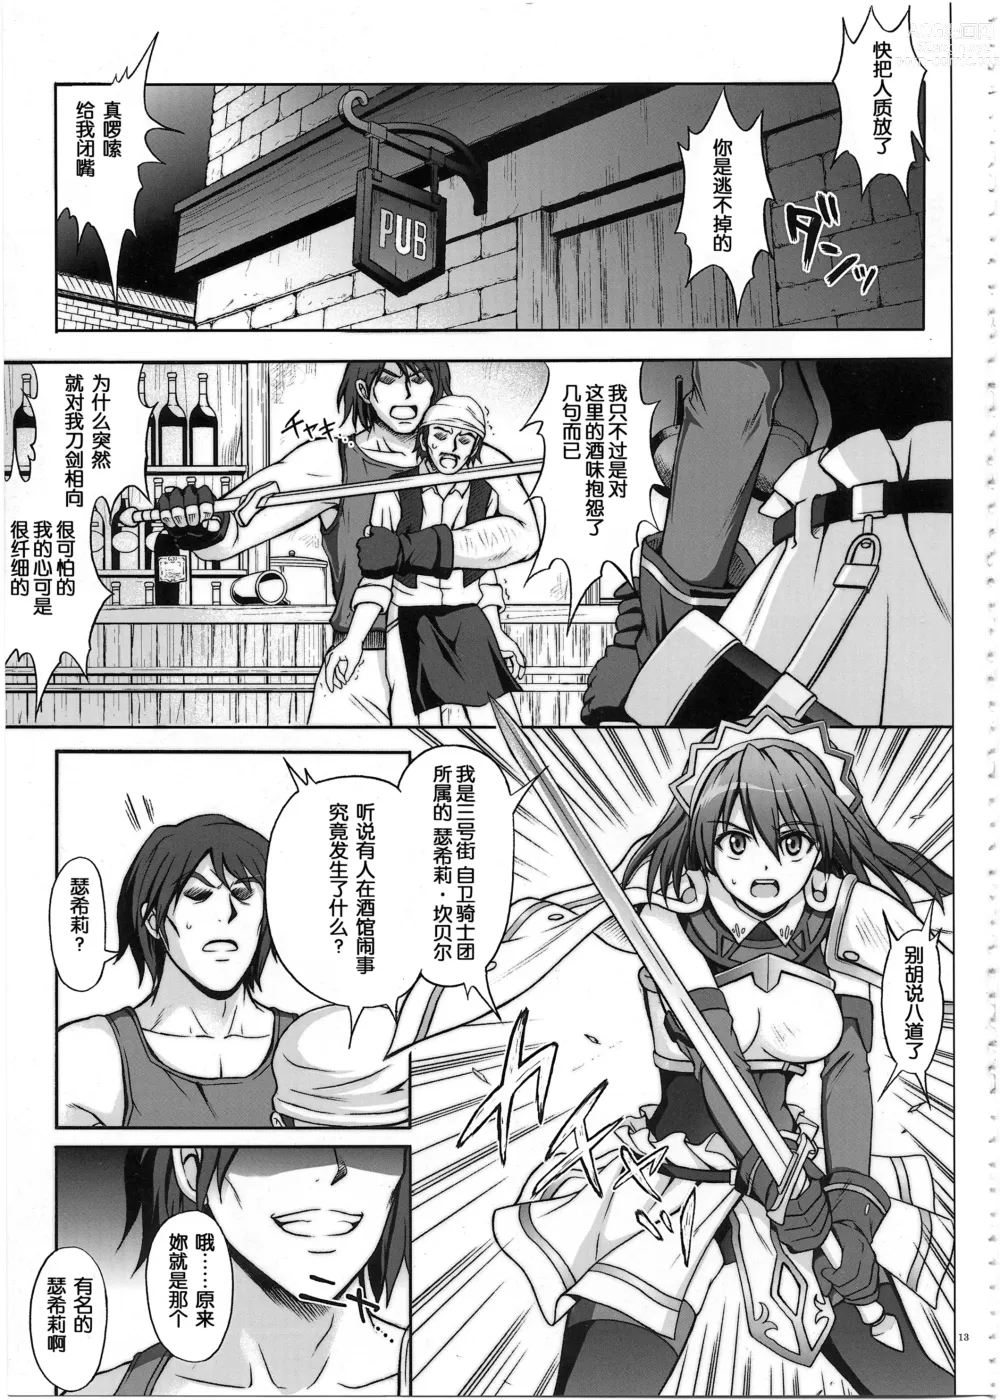 Page 3 of doujinshi HWA